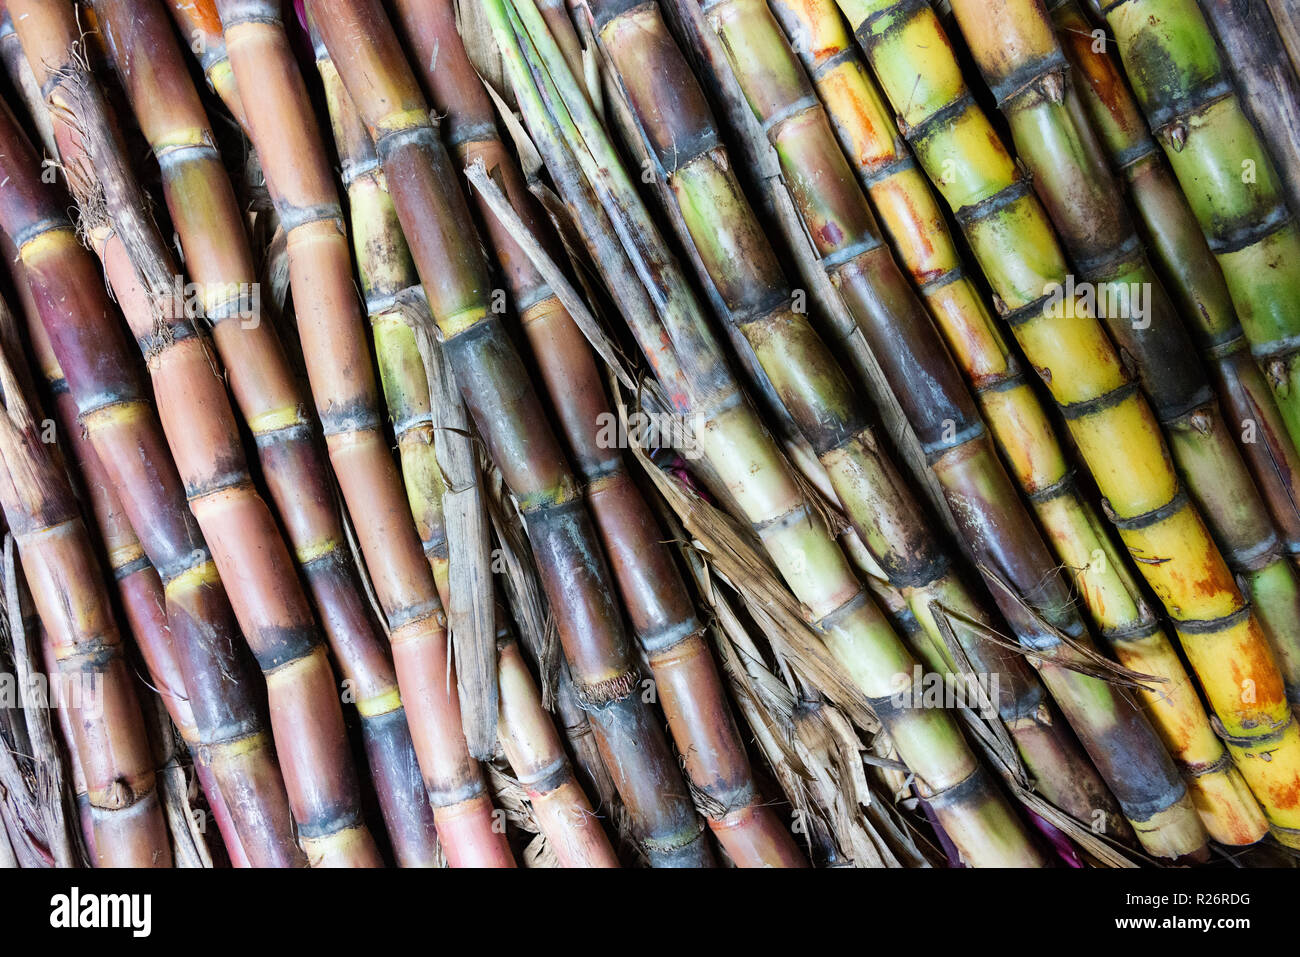 Pratiche agricole e di produzione sono inoltre in esposizione presso il Festival di Goroka, una raccolta di tribali. Questa è la canna da zucchero. Foto Stock